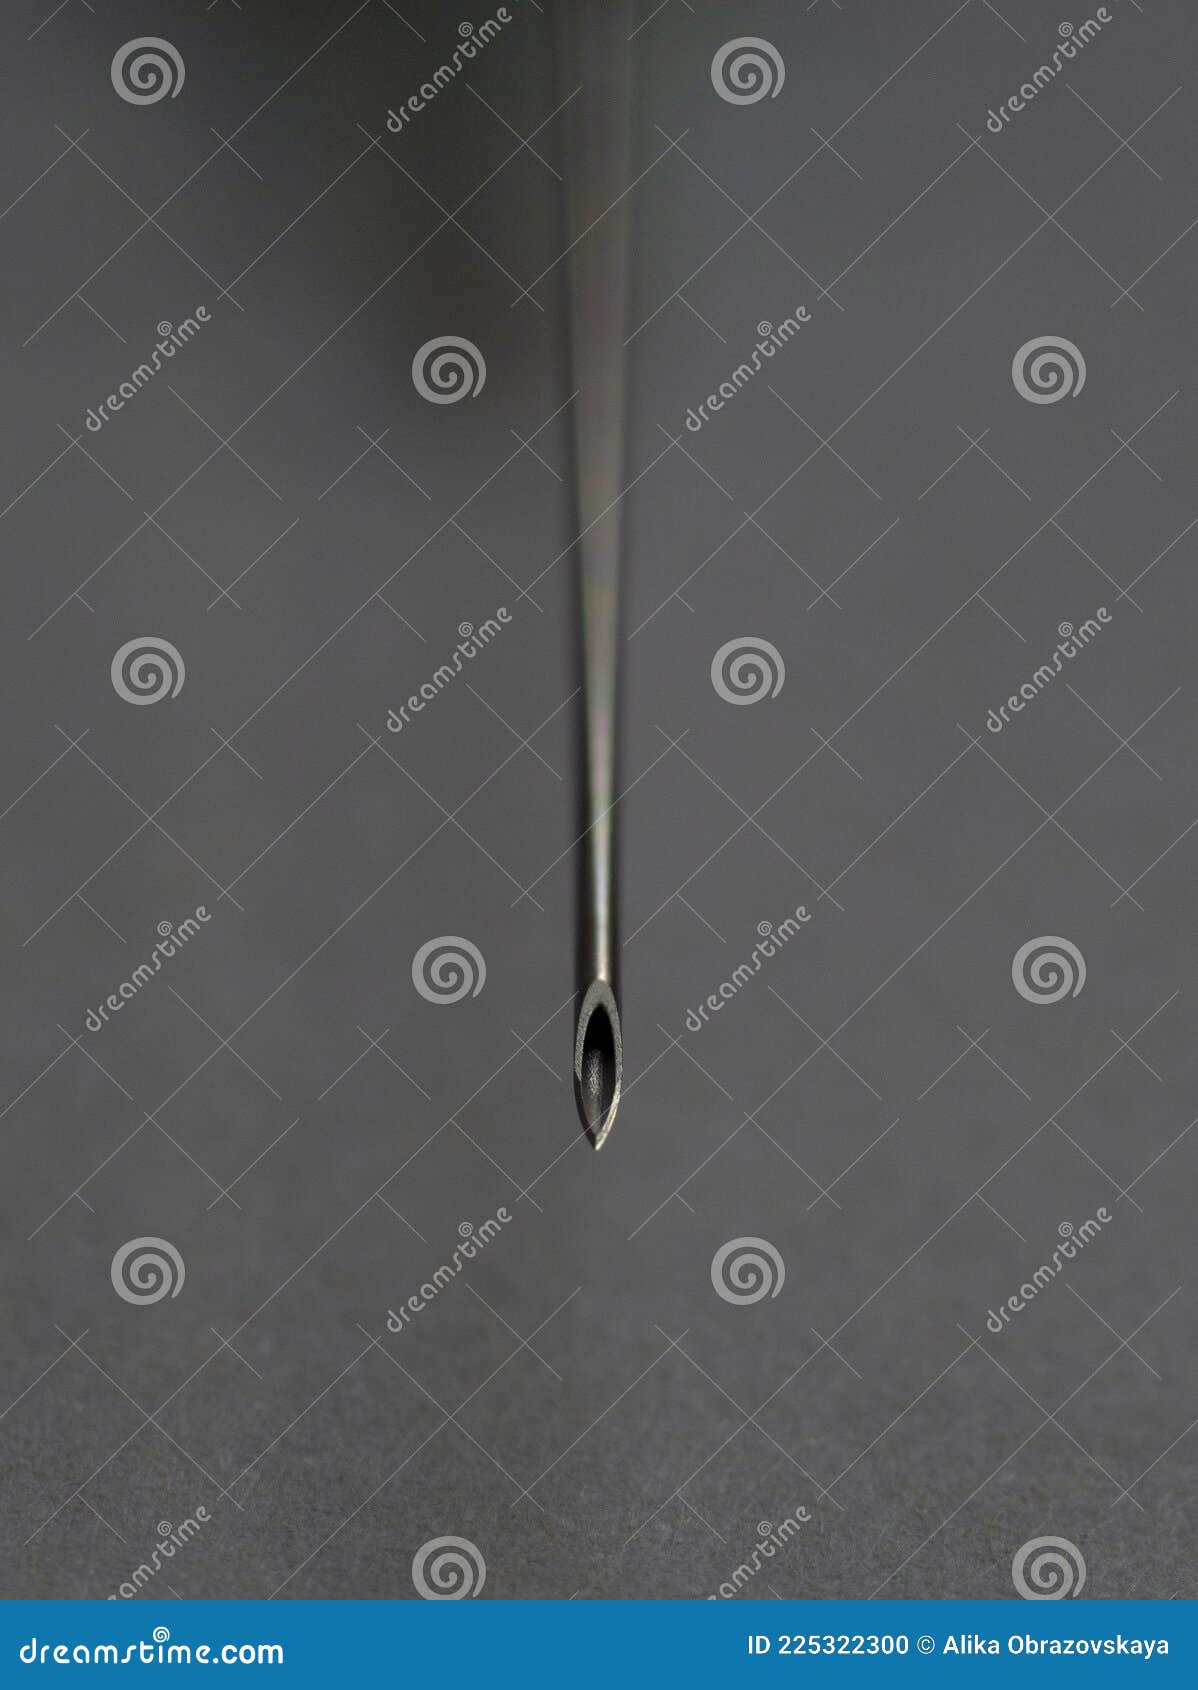 Iron Needle of a Syringe Close-up Stock Photo - Image of inscription ...